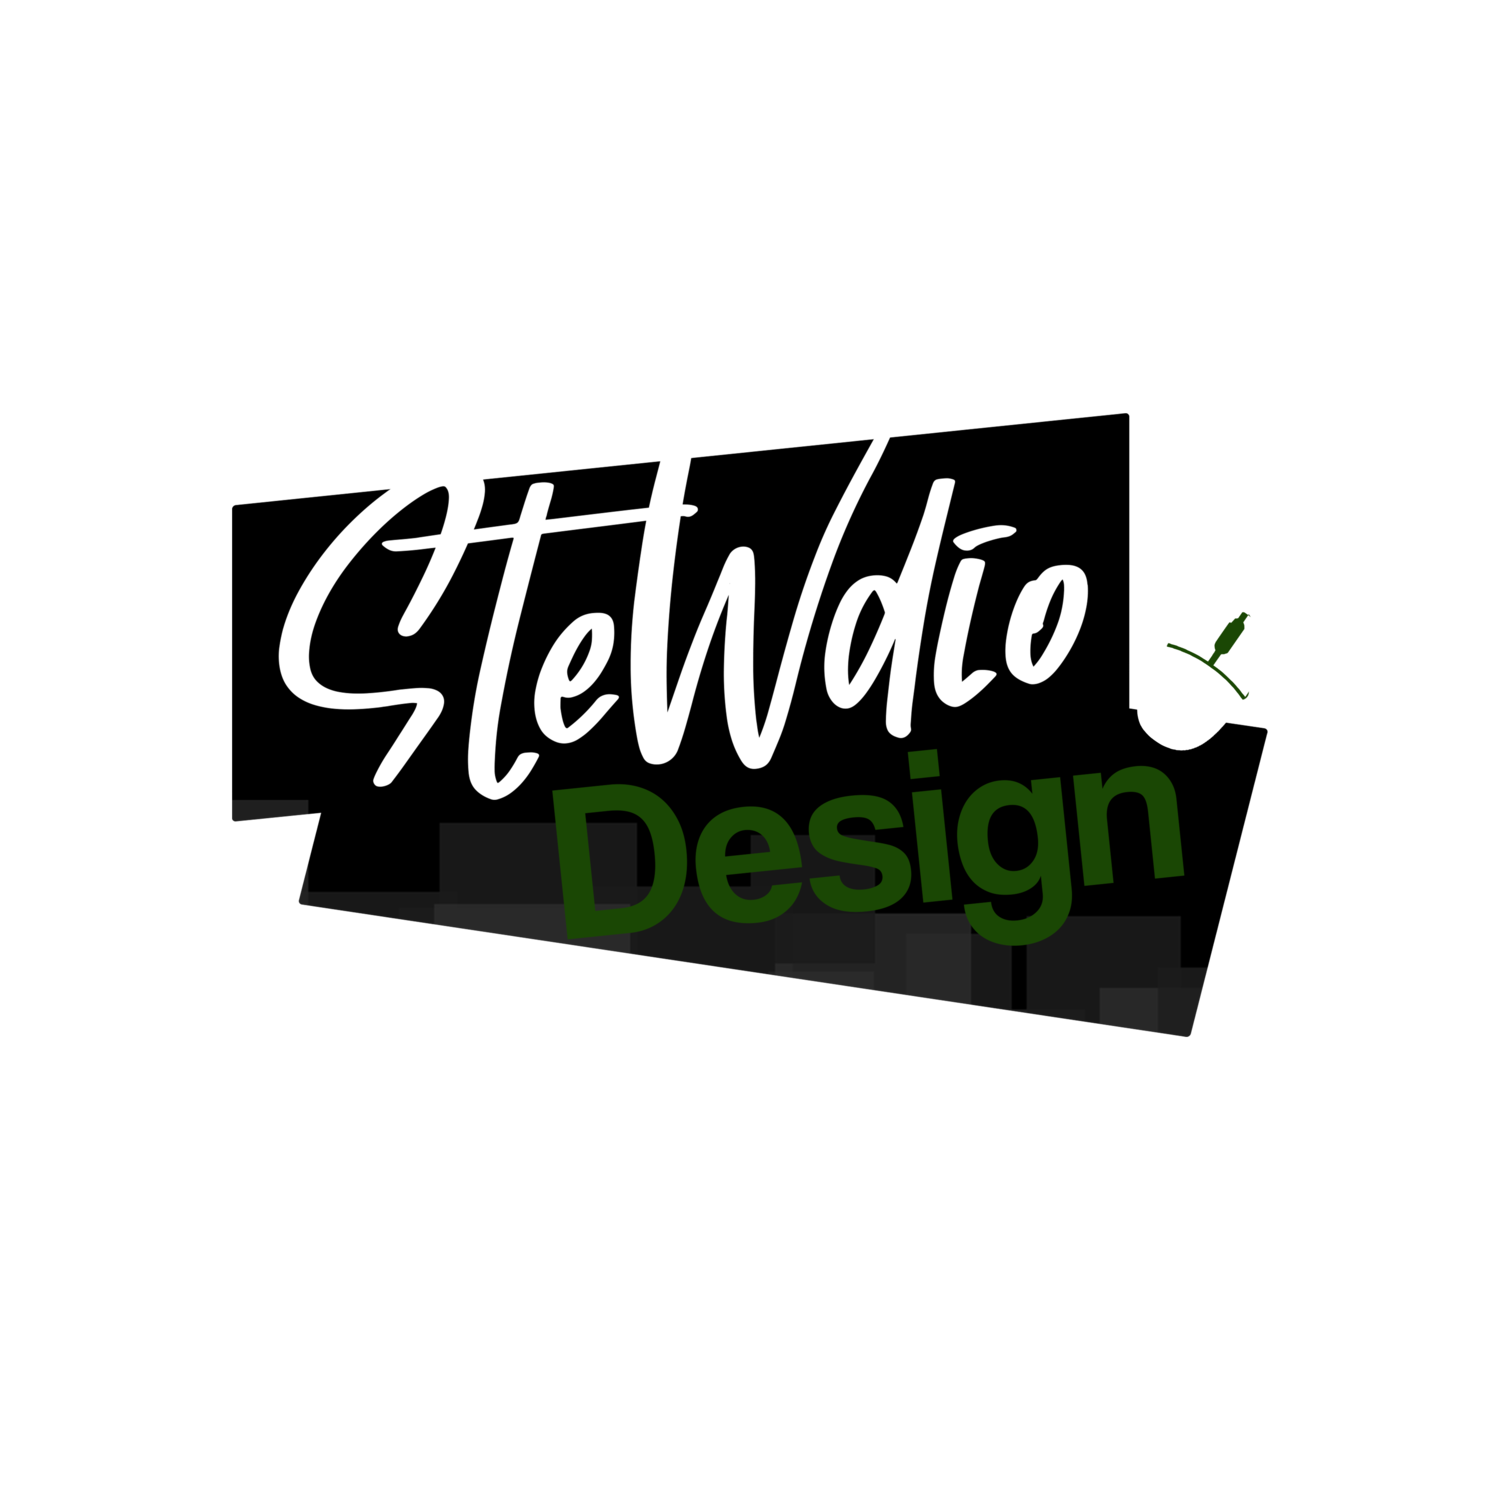 Stewdio Design